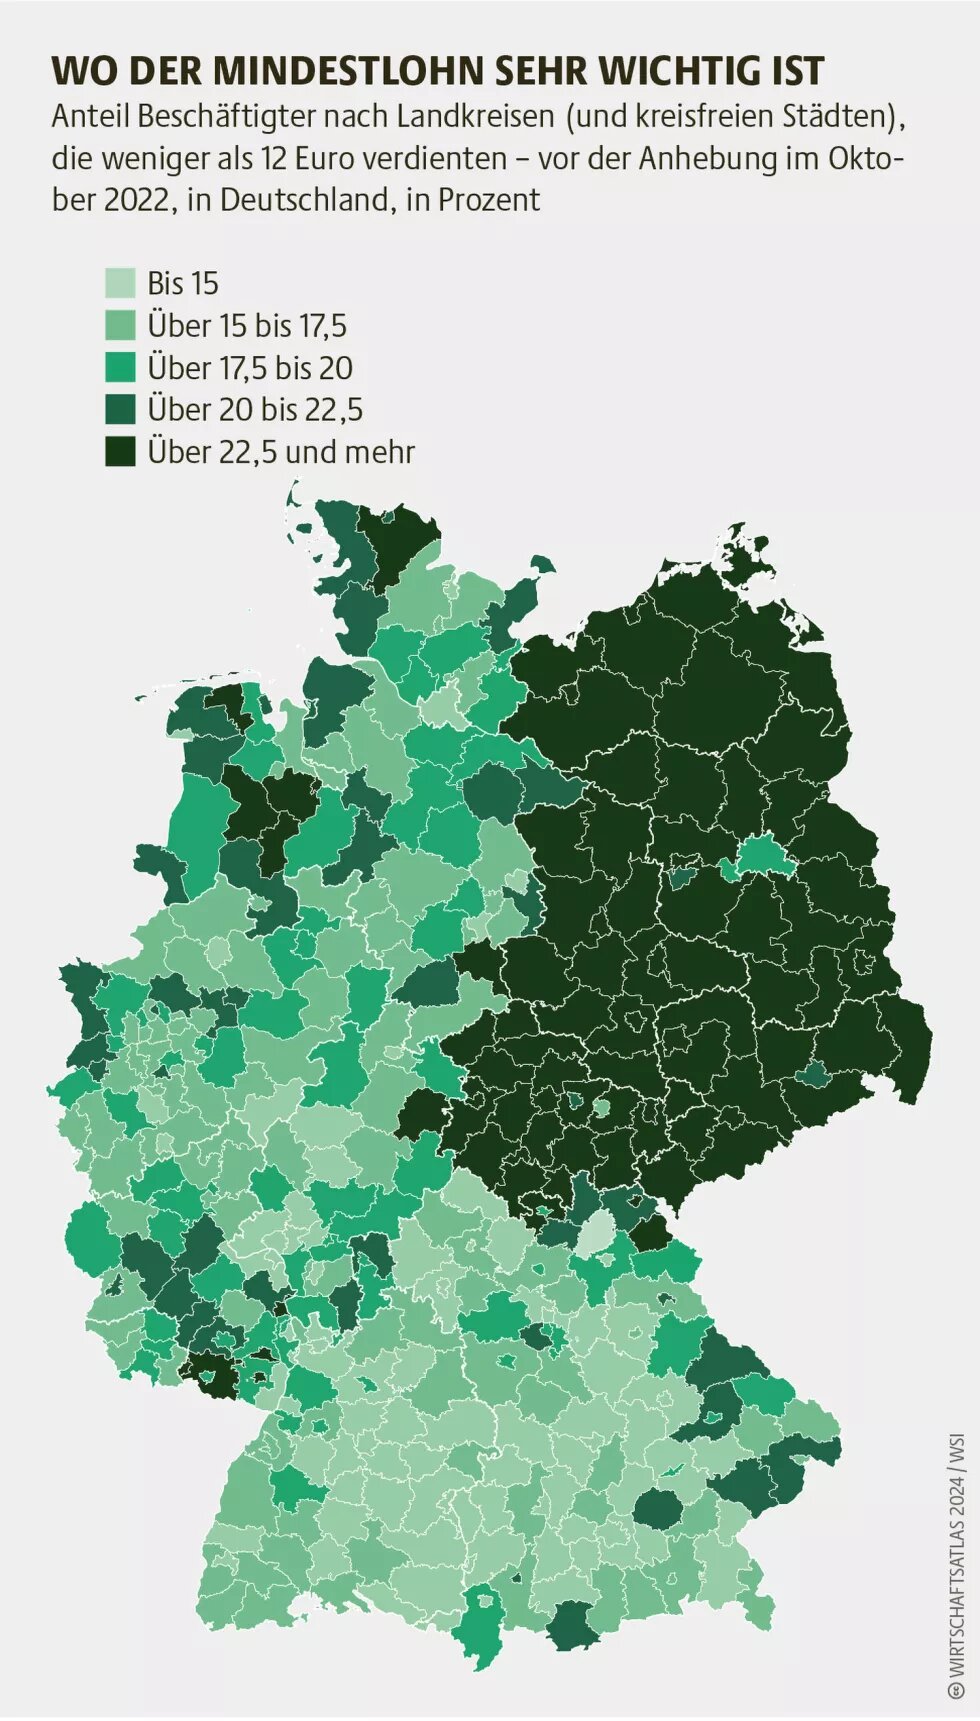 Anteil Beschäftigter nach Landkreisen (und kreisfreien Städten), die weniger als 12 Euro verdienten – vor der Anhebung im Oktober 2022, in Deutschland, in Prozent